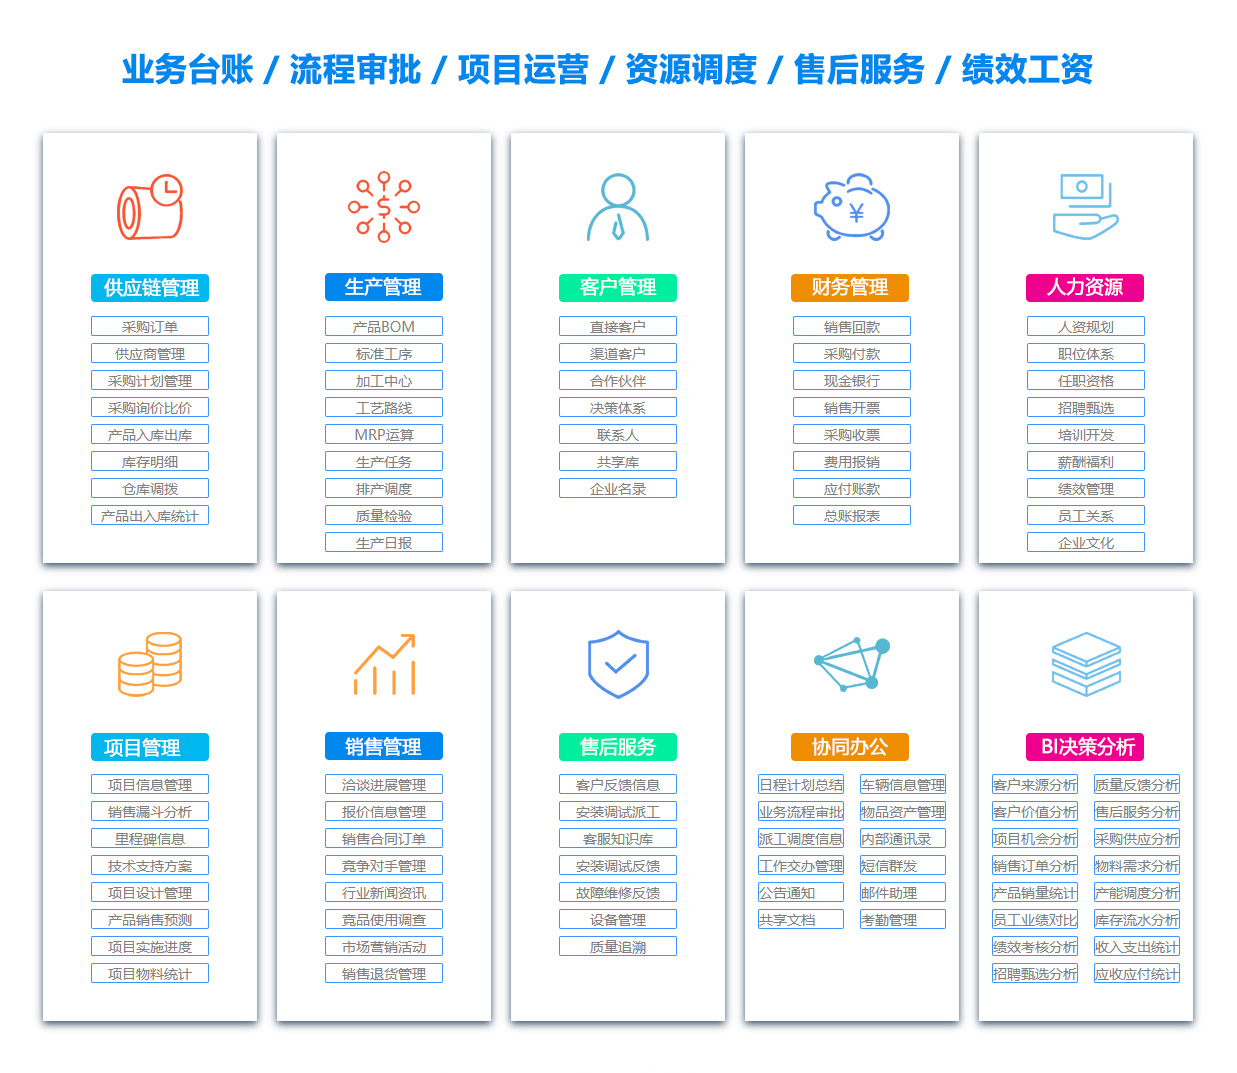 深圳MIS:信息管理系统